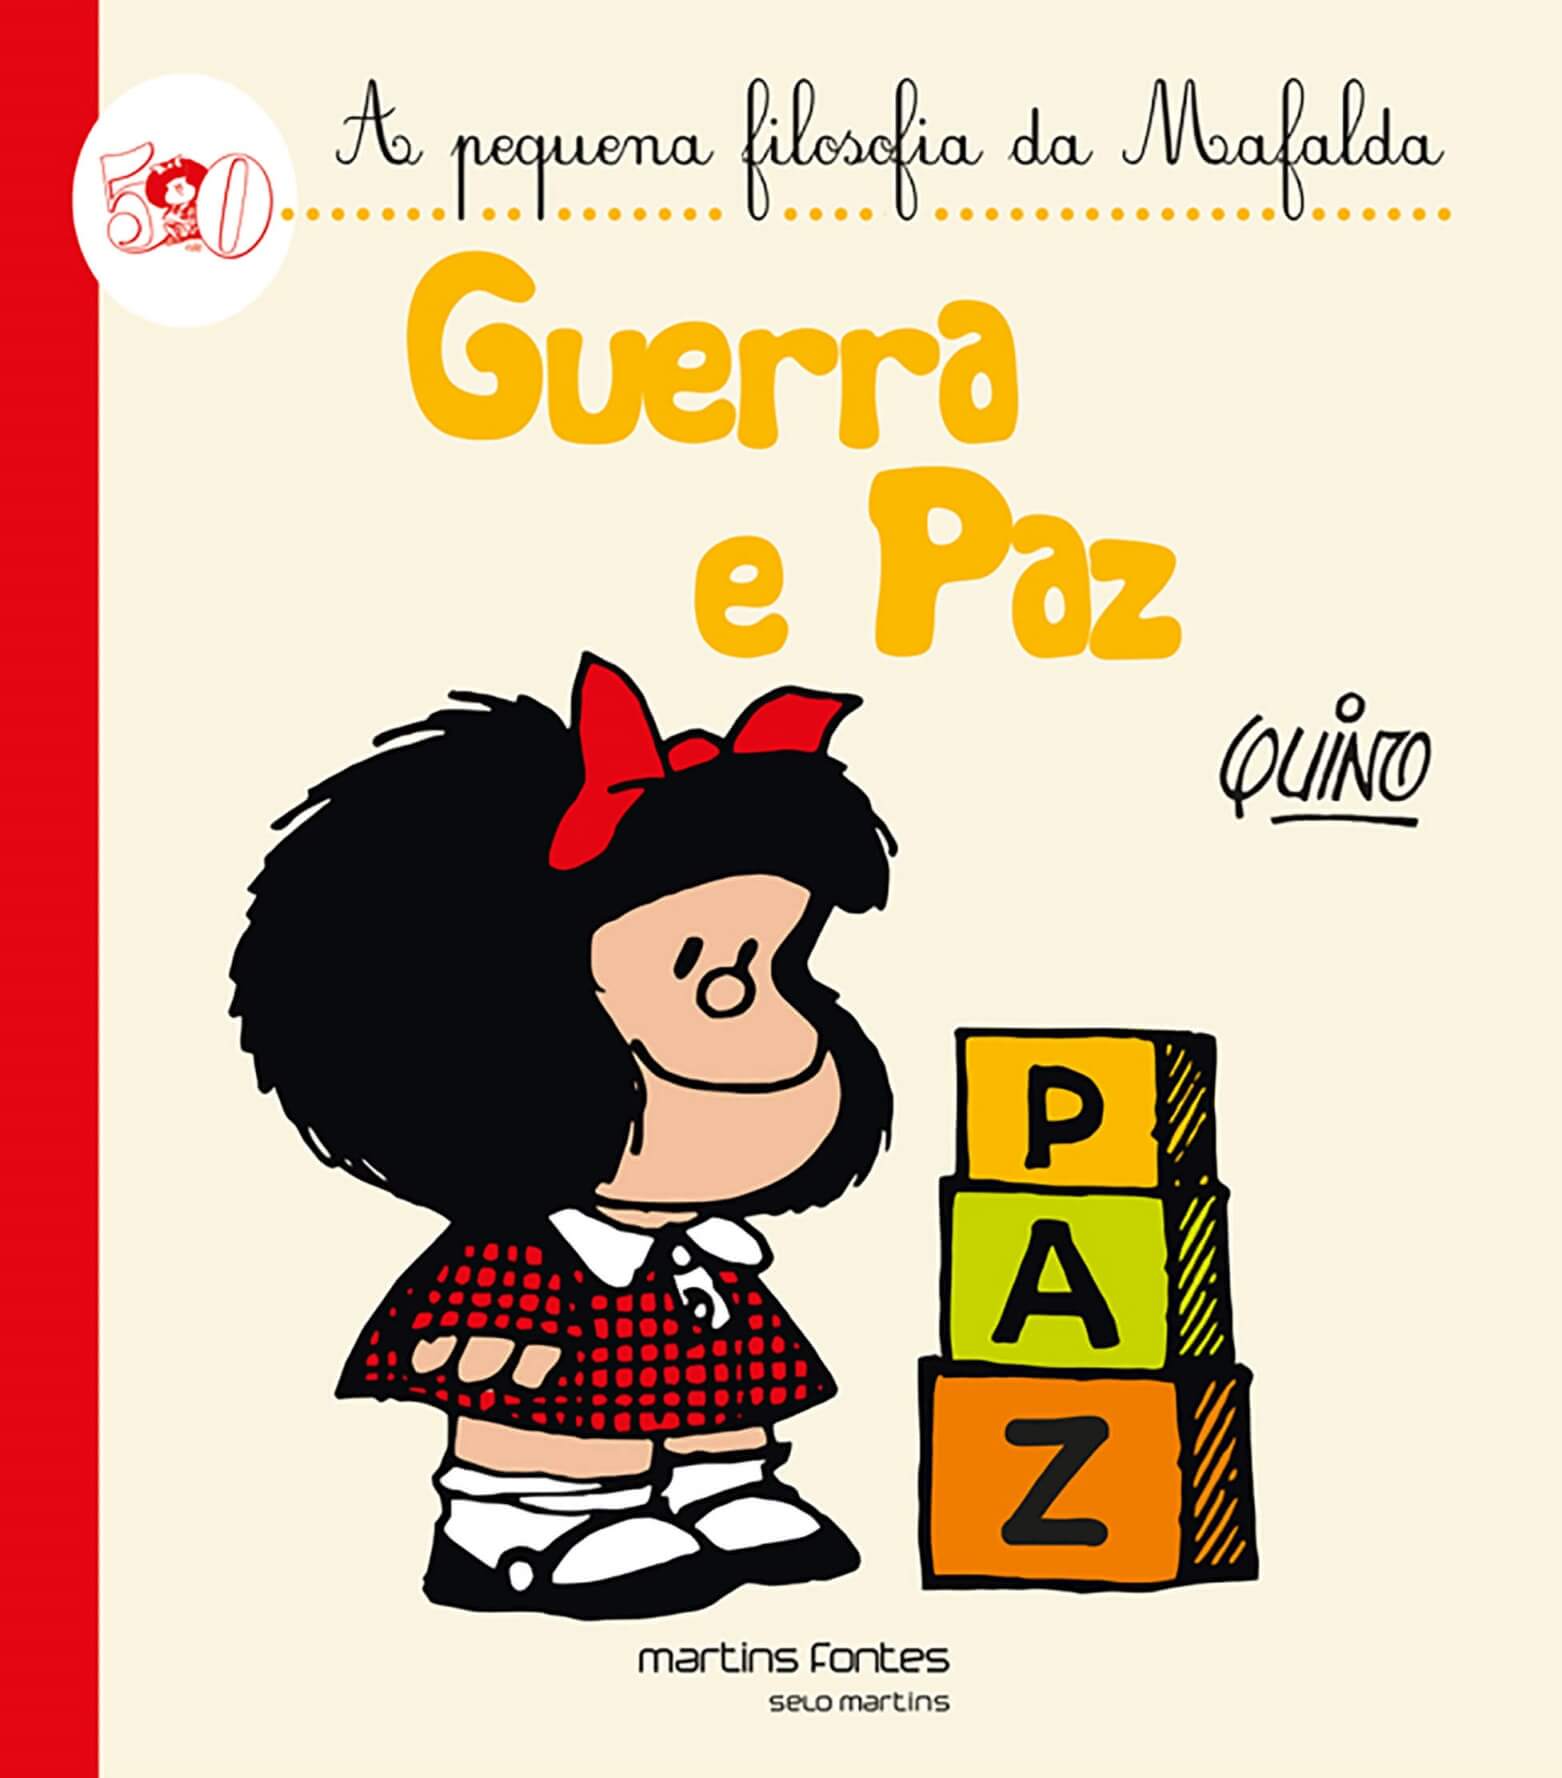 Guerra e paz - A pequena filosofia da Mafalda